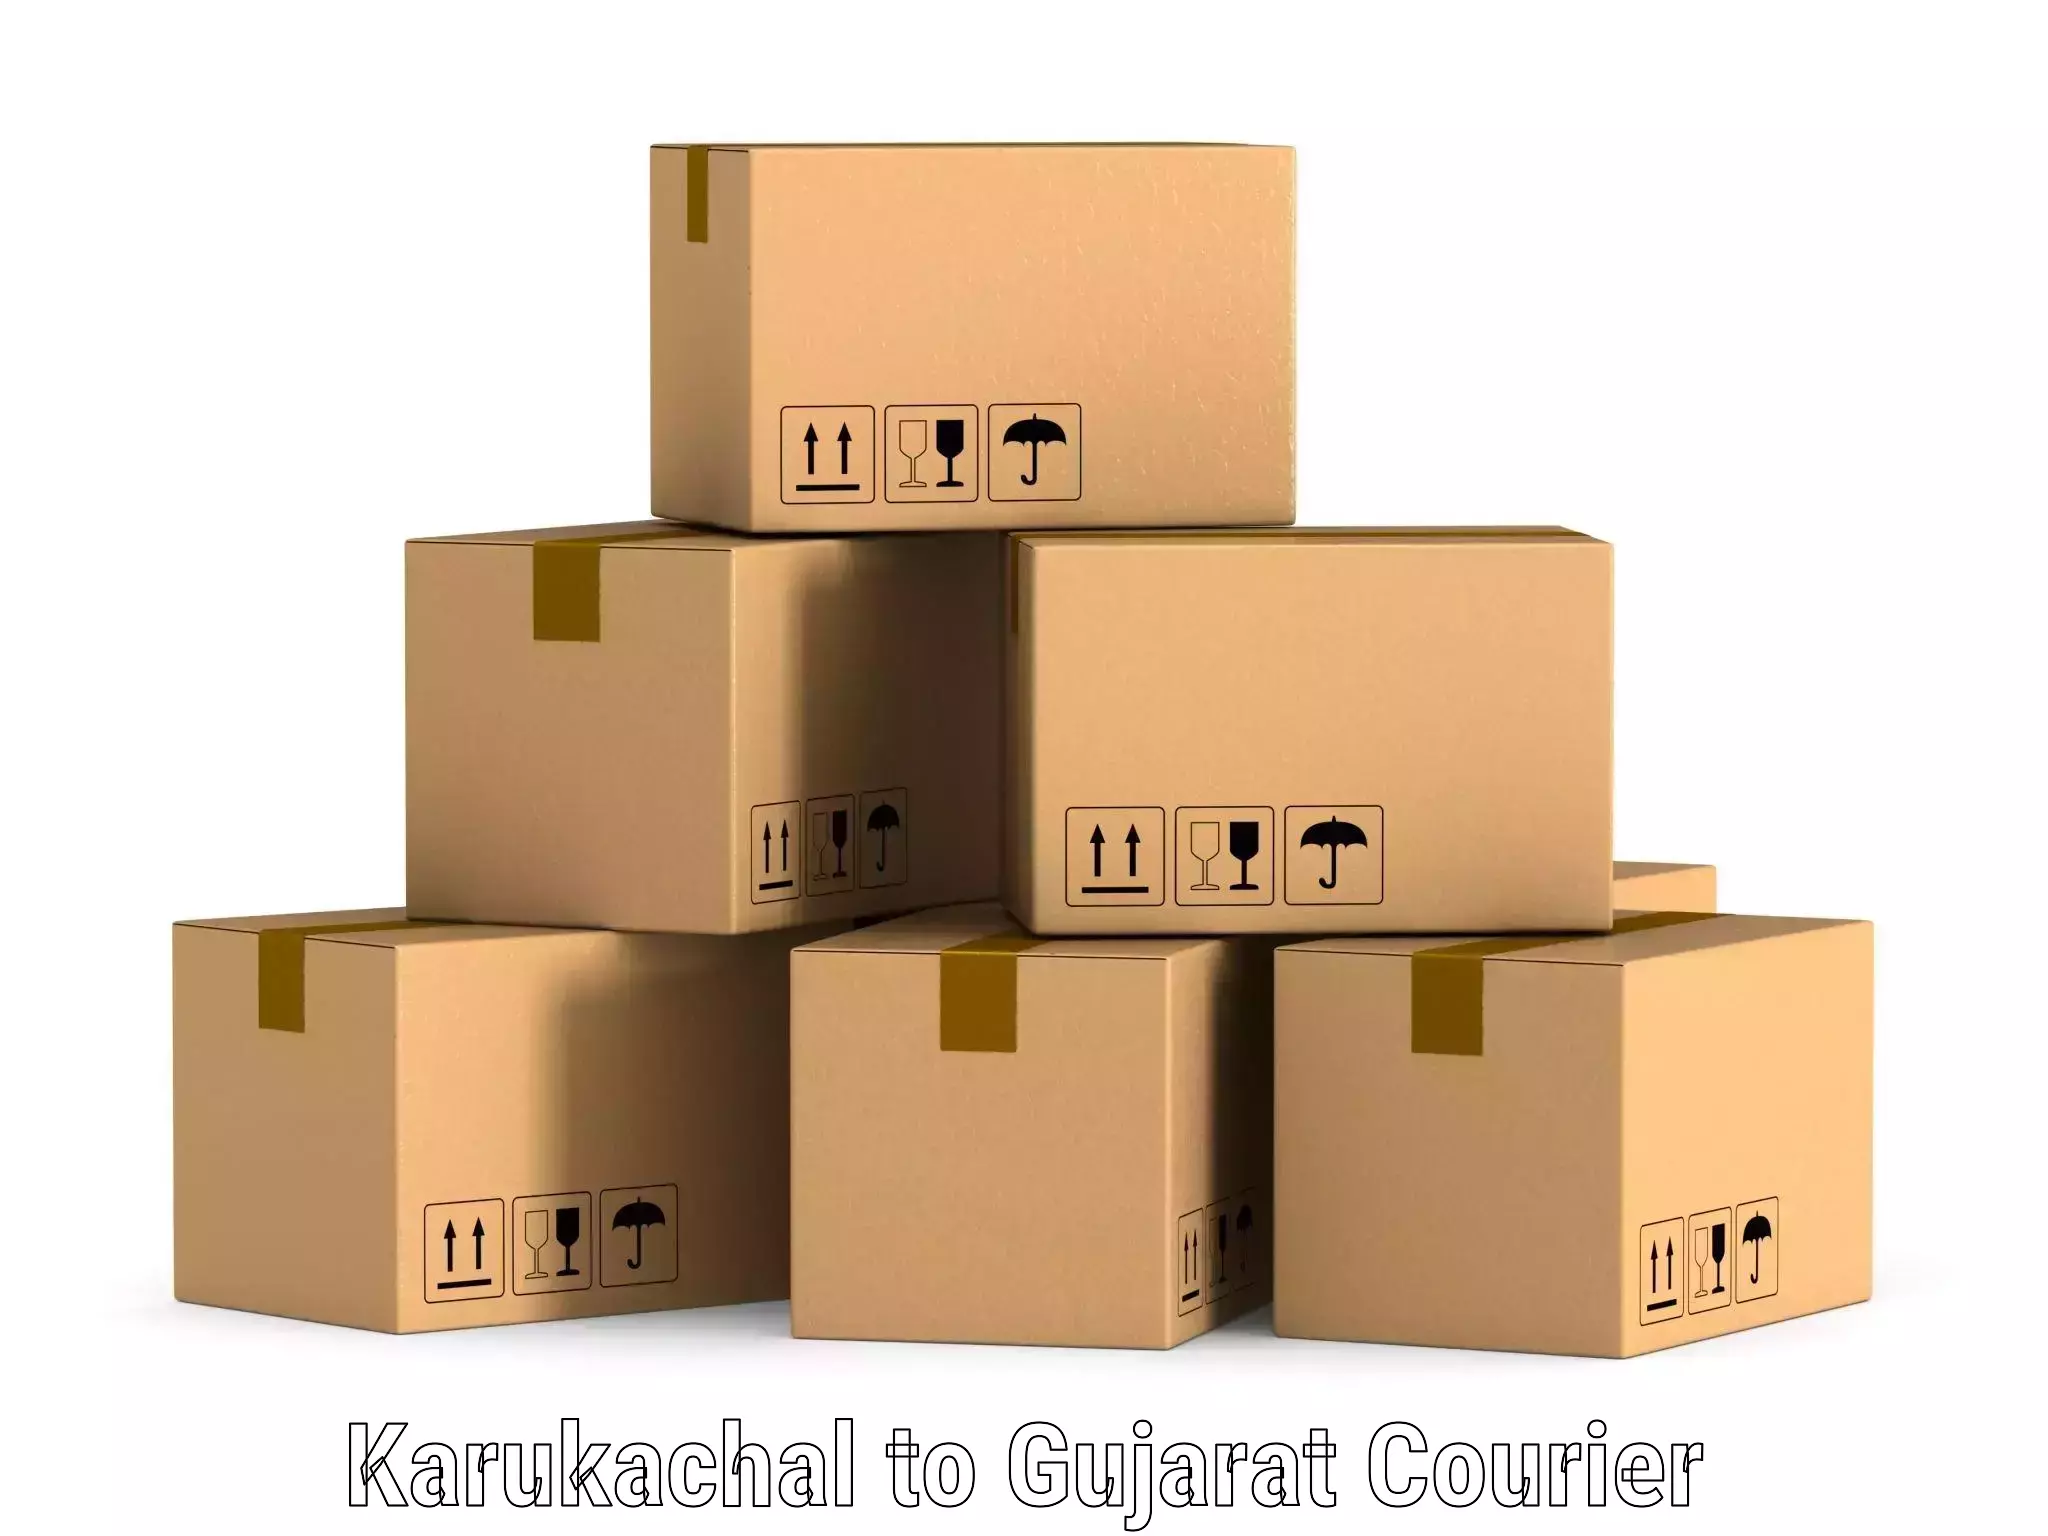 Smart logistics strategies in Karukachal to Rajpipla